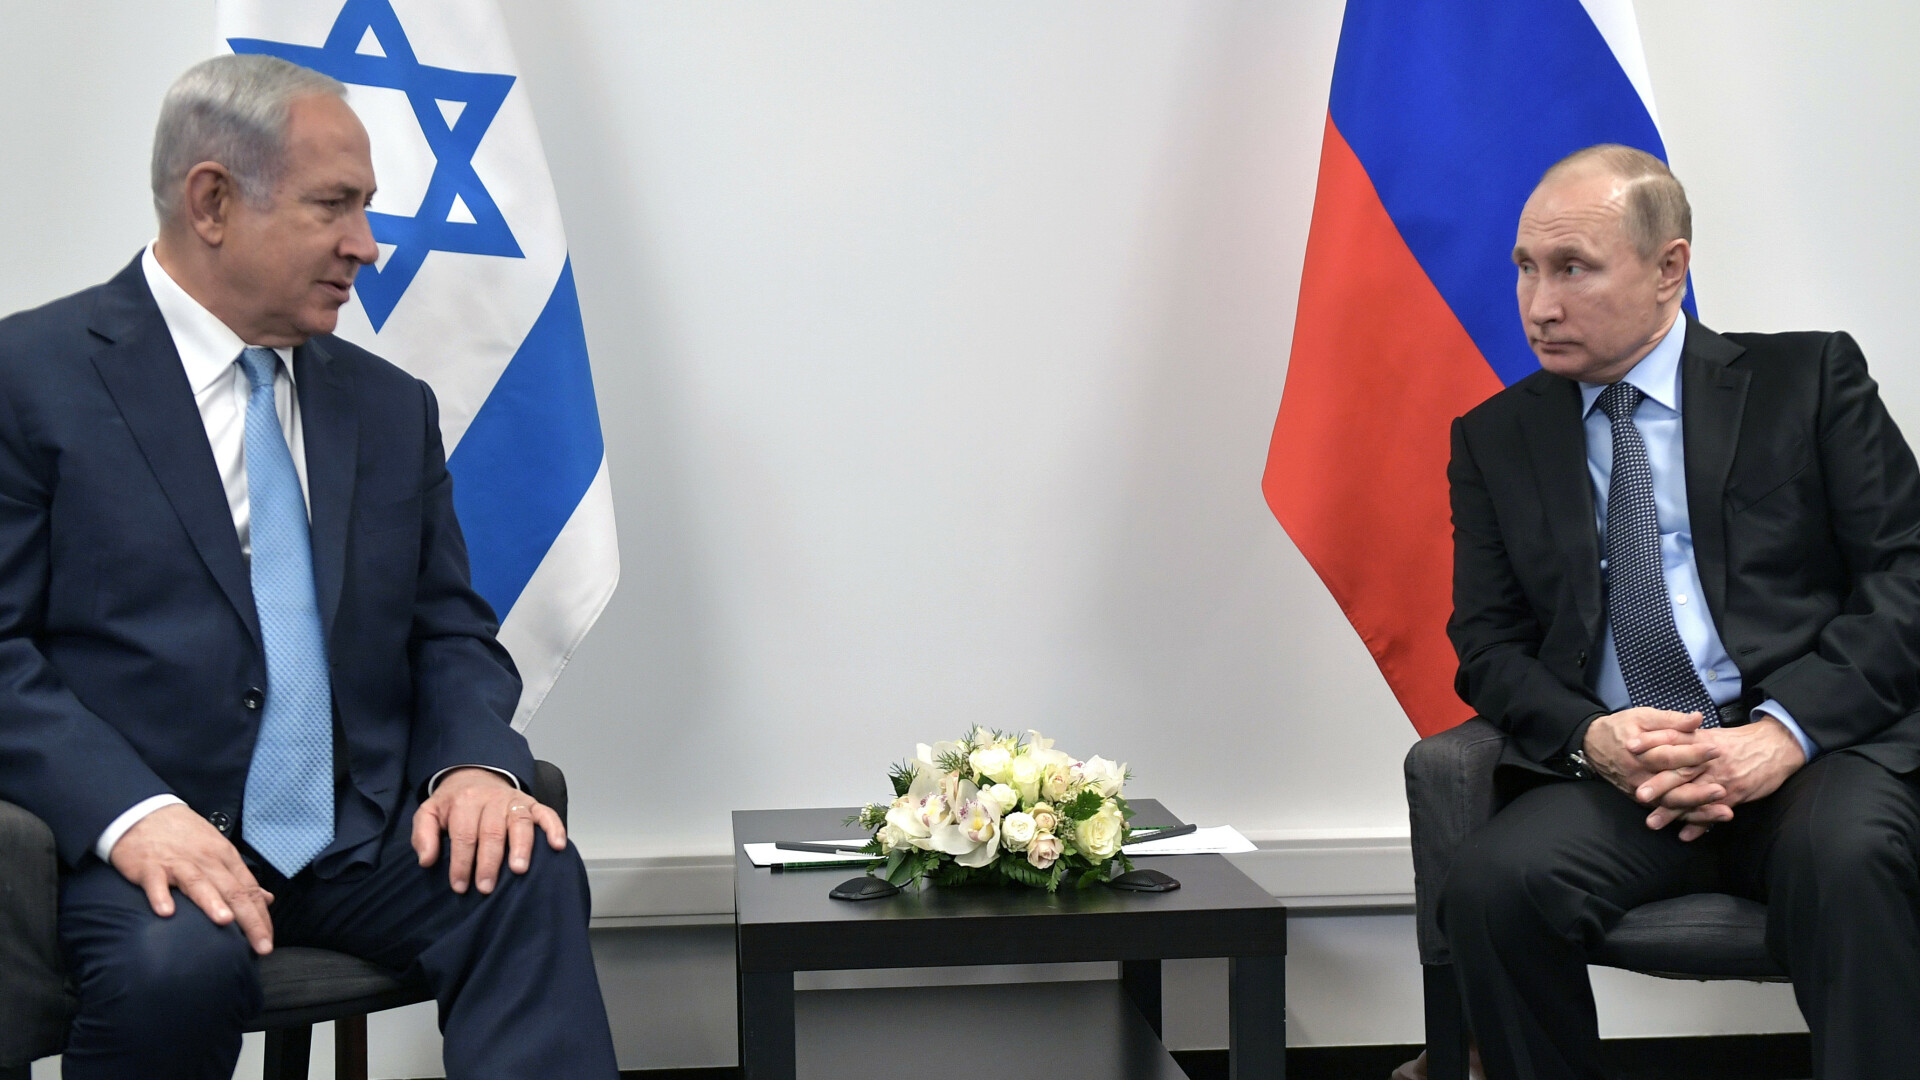 Benjamin Netanyahu, Vladimir Putin